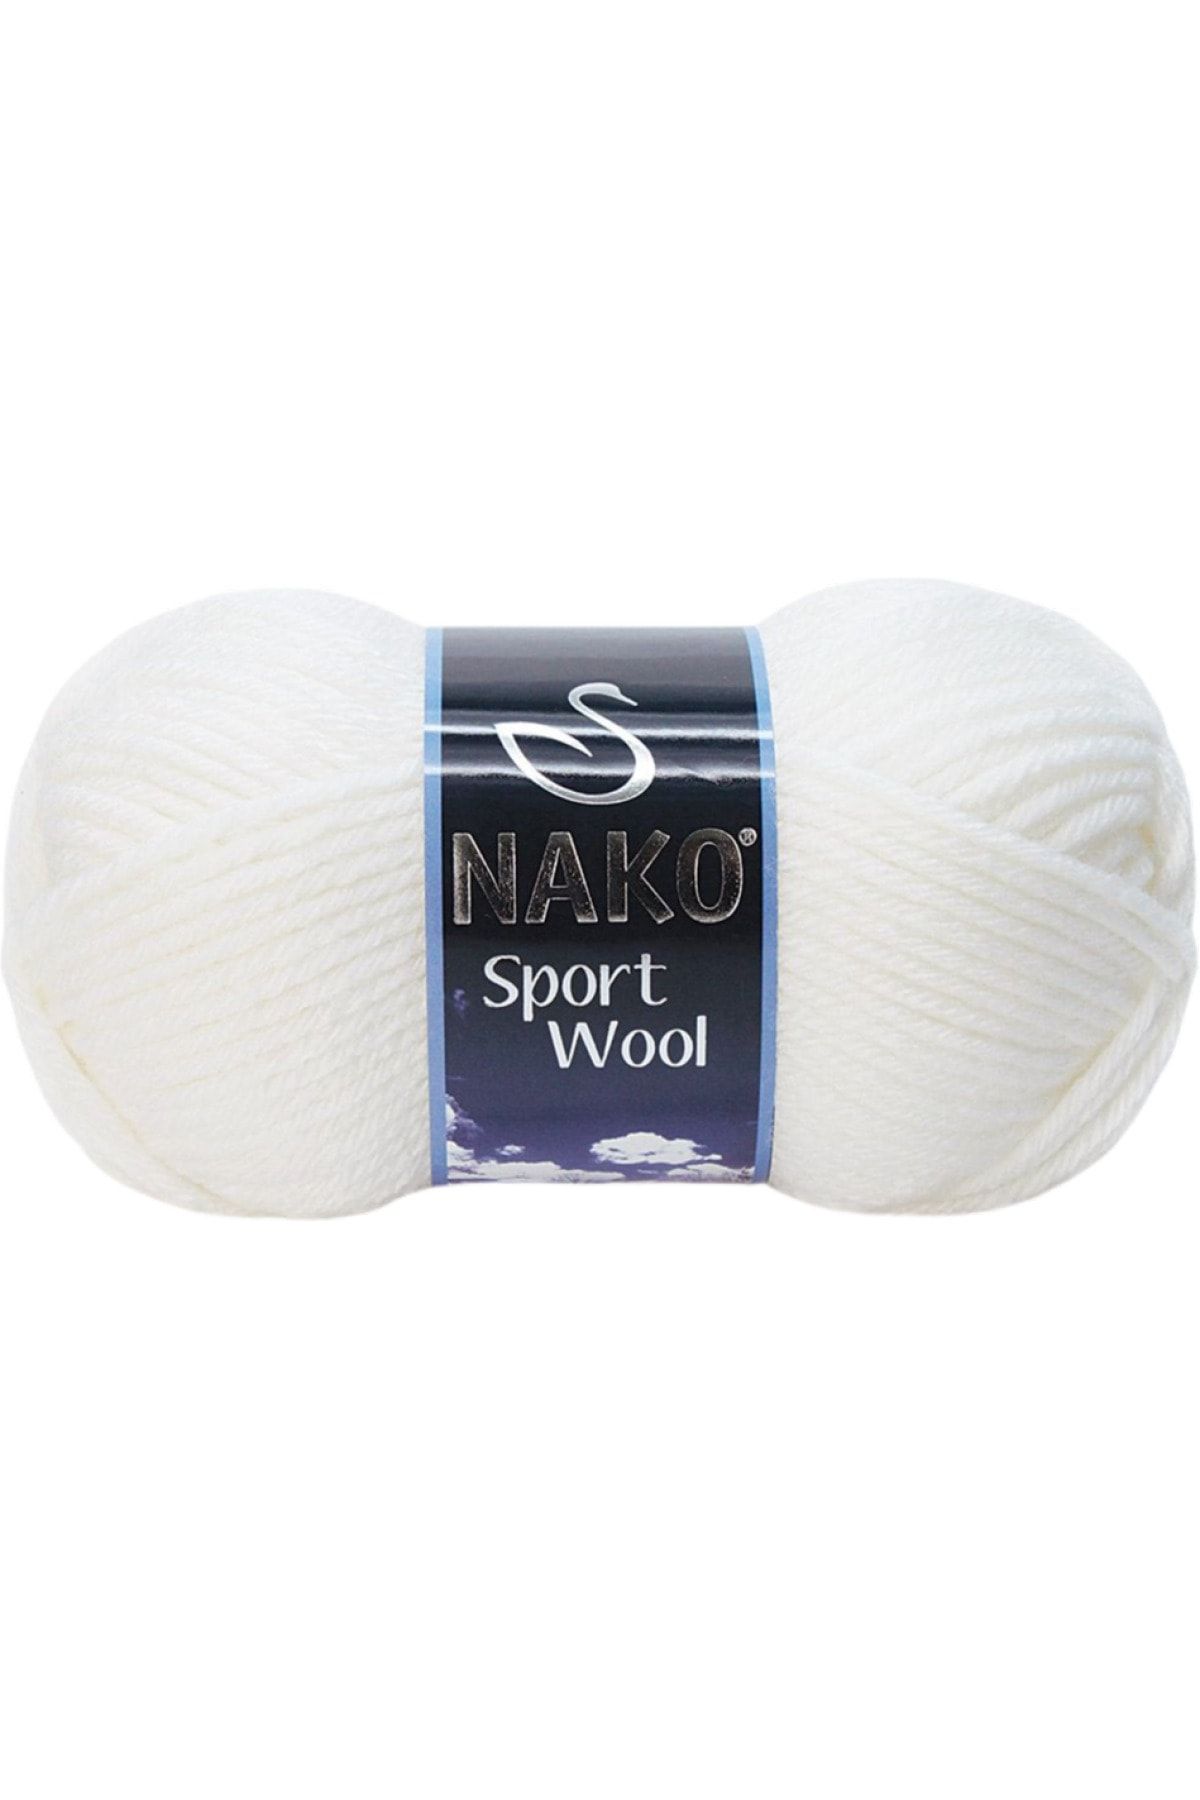 Nako Sport Wool Yün Karışımlı 208 Beyaz Renk El Örgü Ipi - 1 Adet